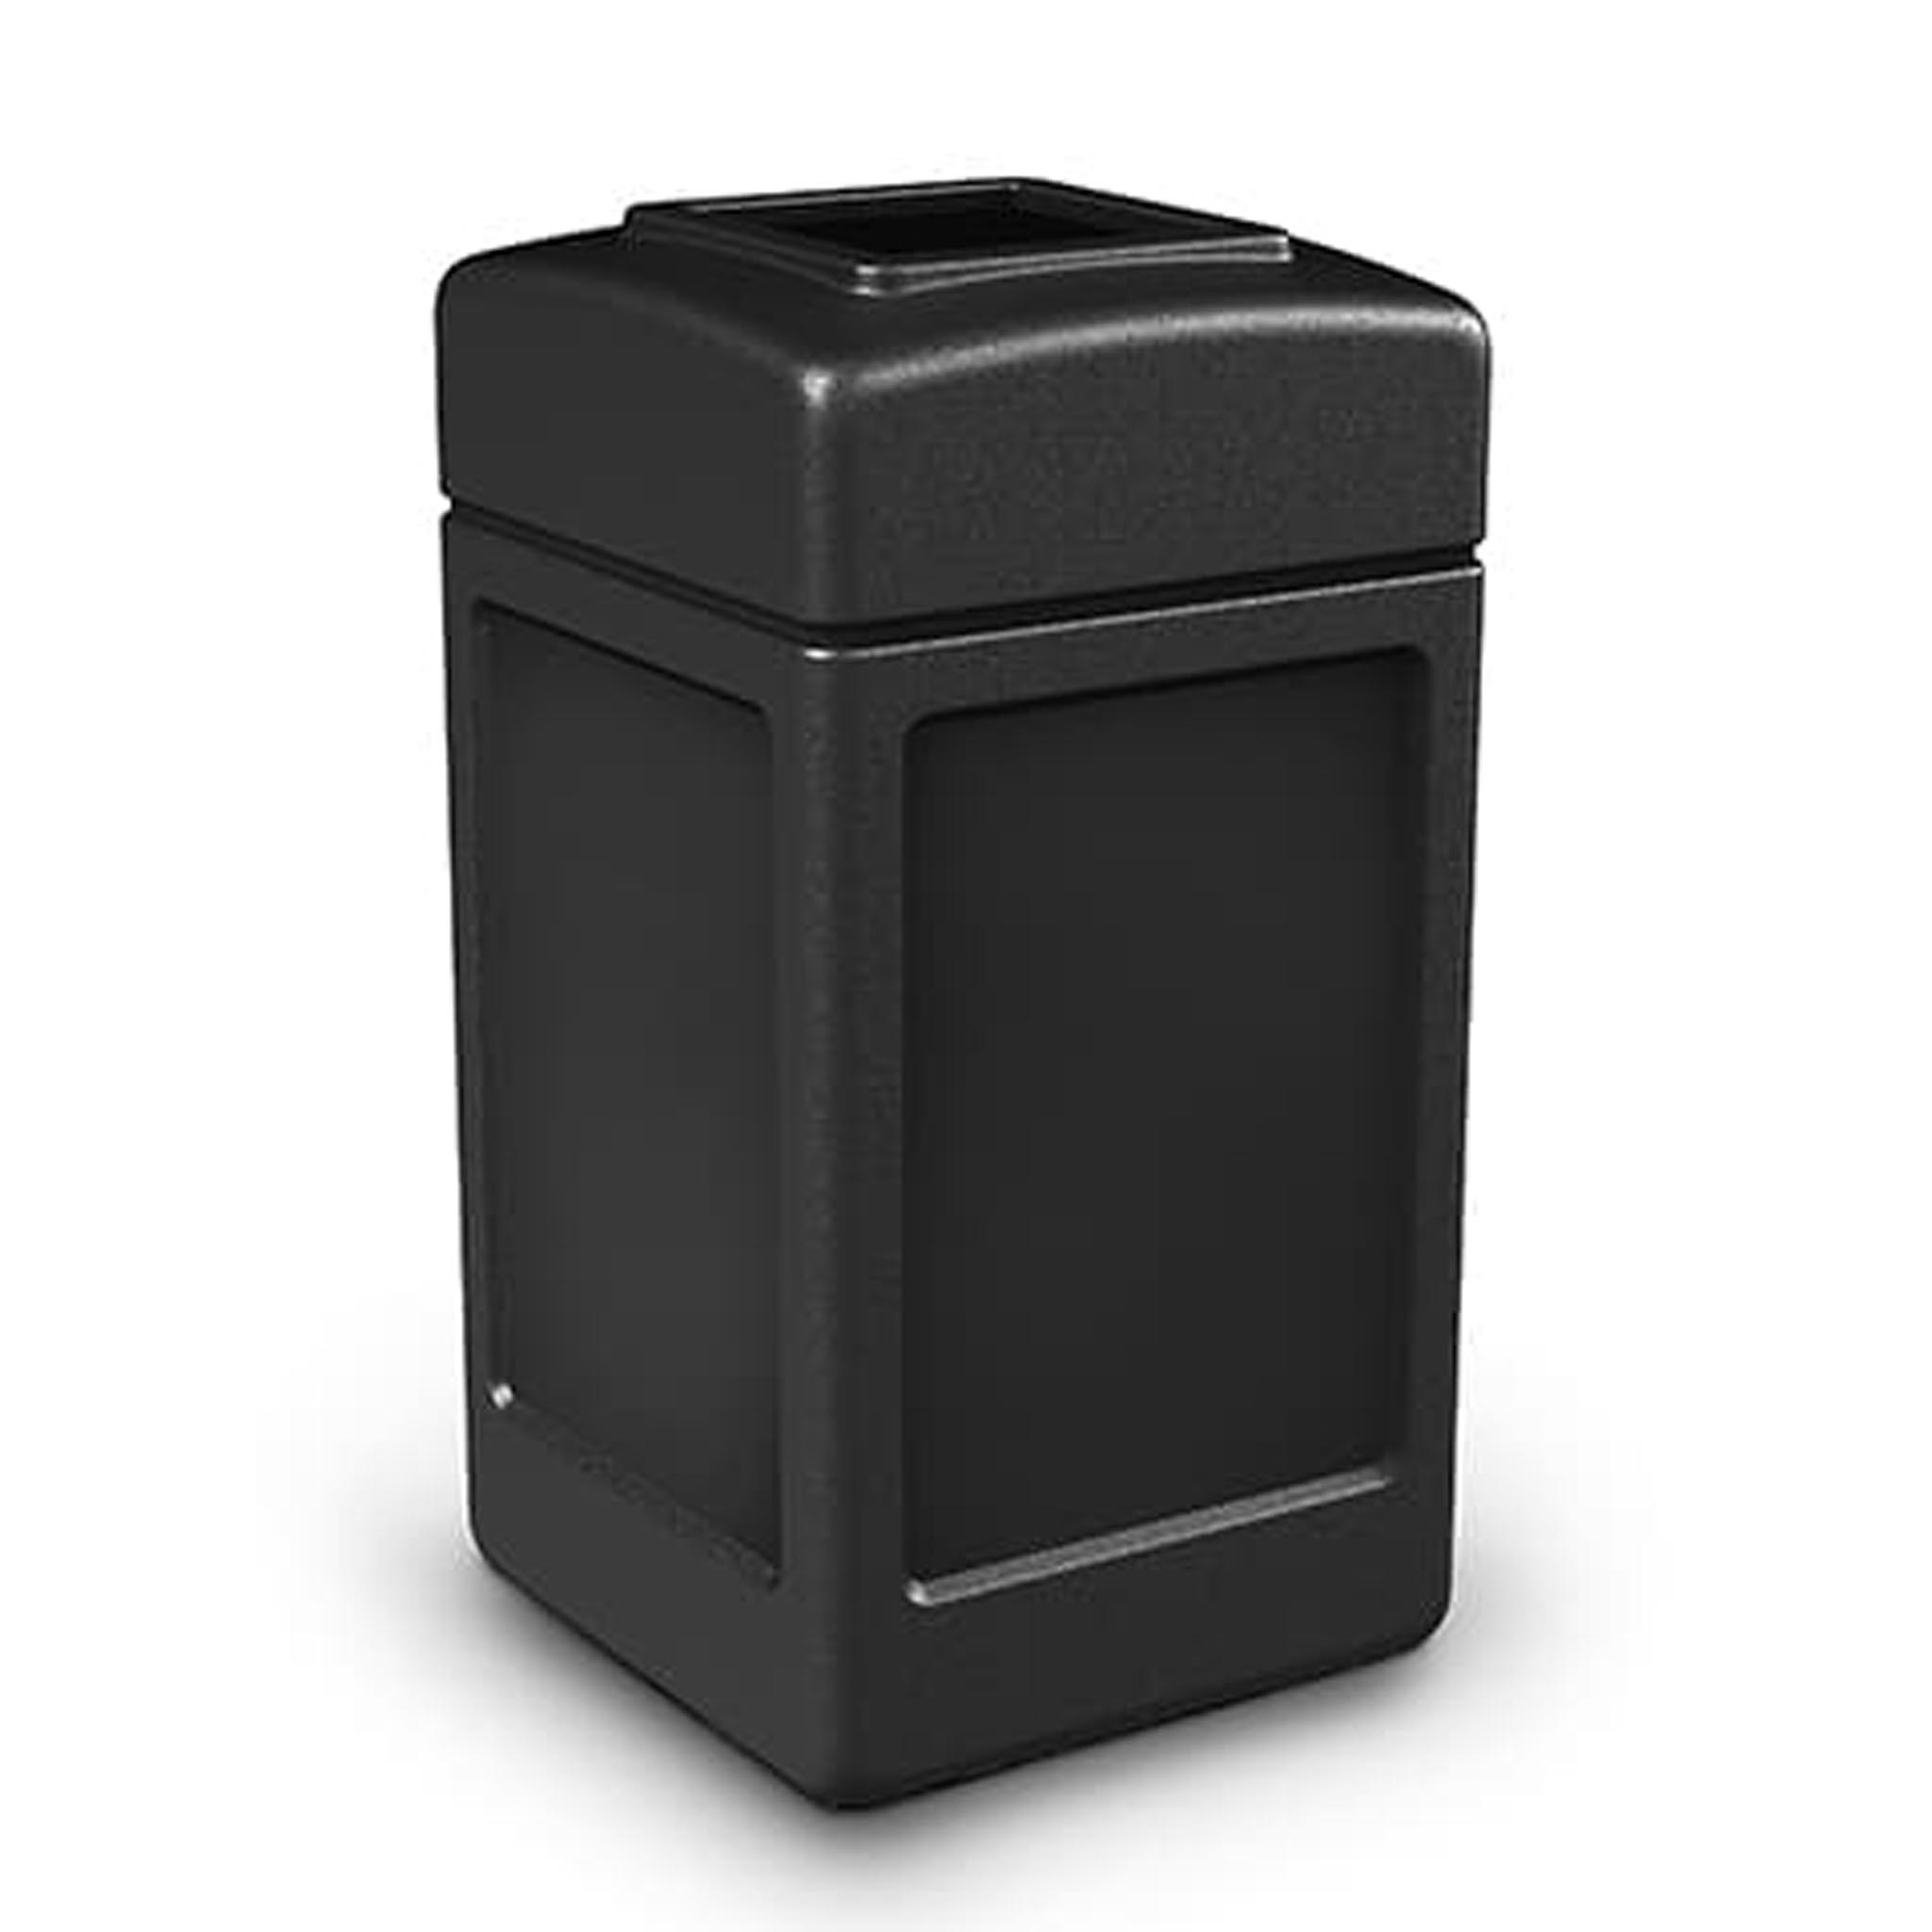 Lavex 50 Gallon Black Square Trash Can